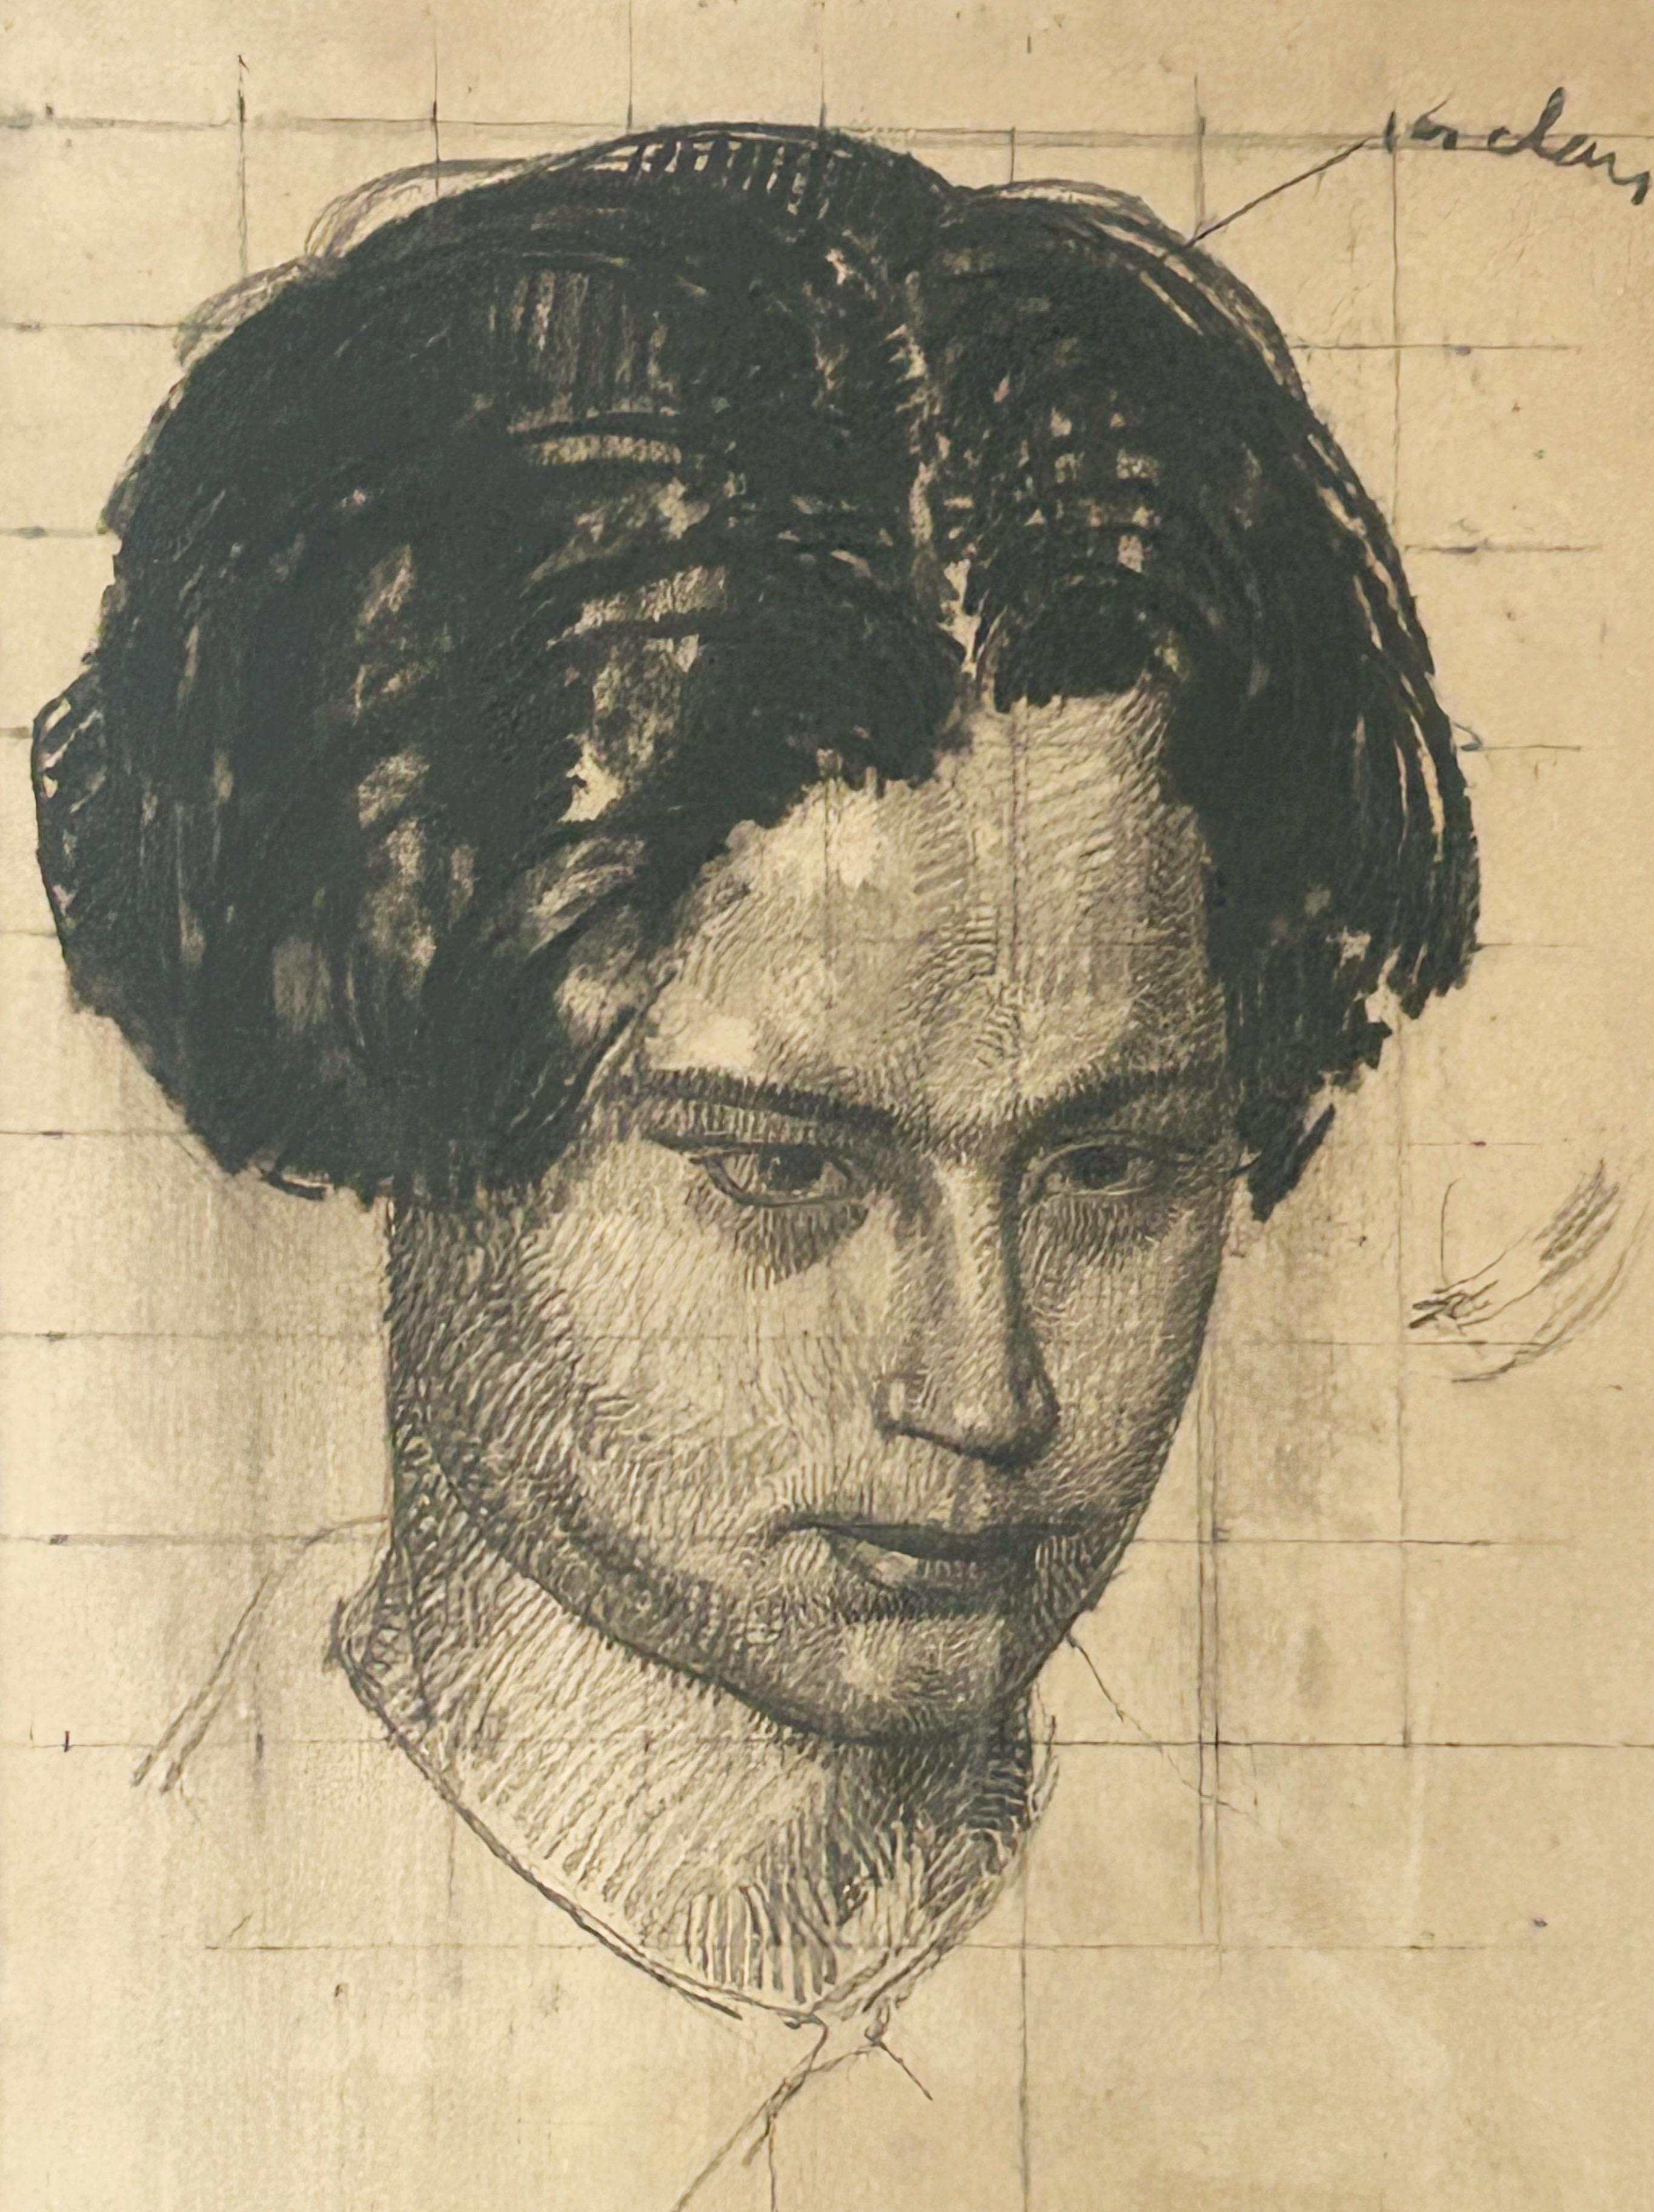 Porträt von Raphaël Fumet; vorbereitende Studie für "La Famille mystique", 1914